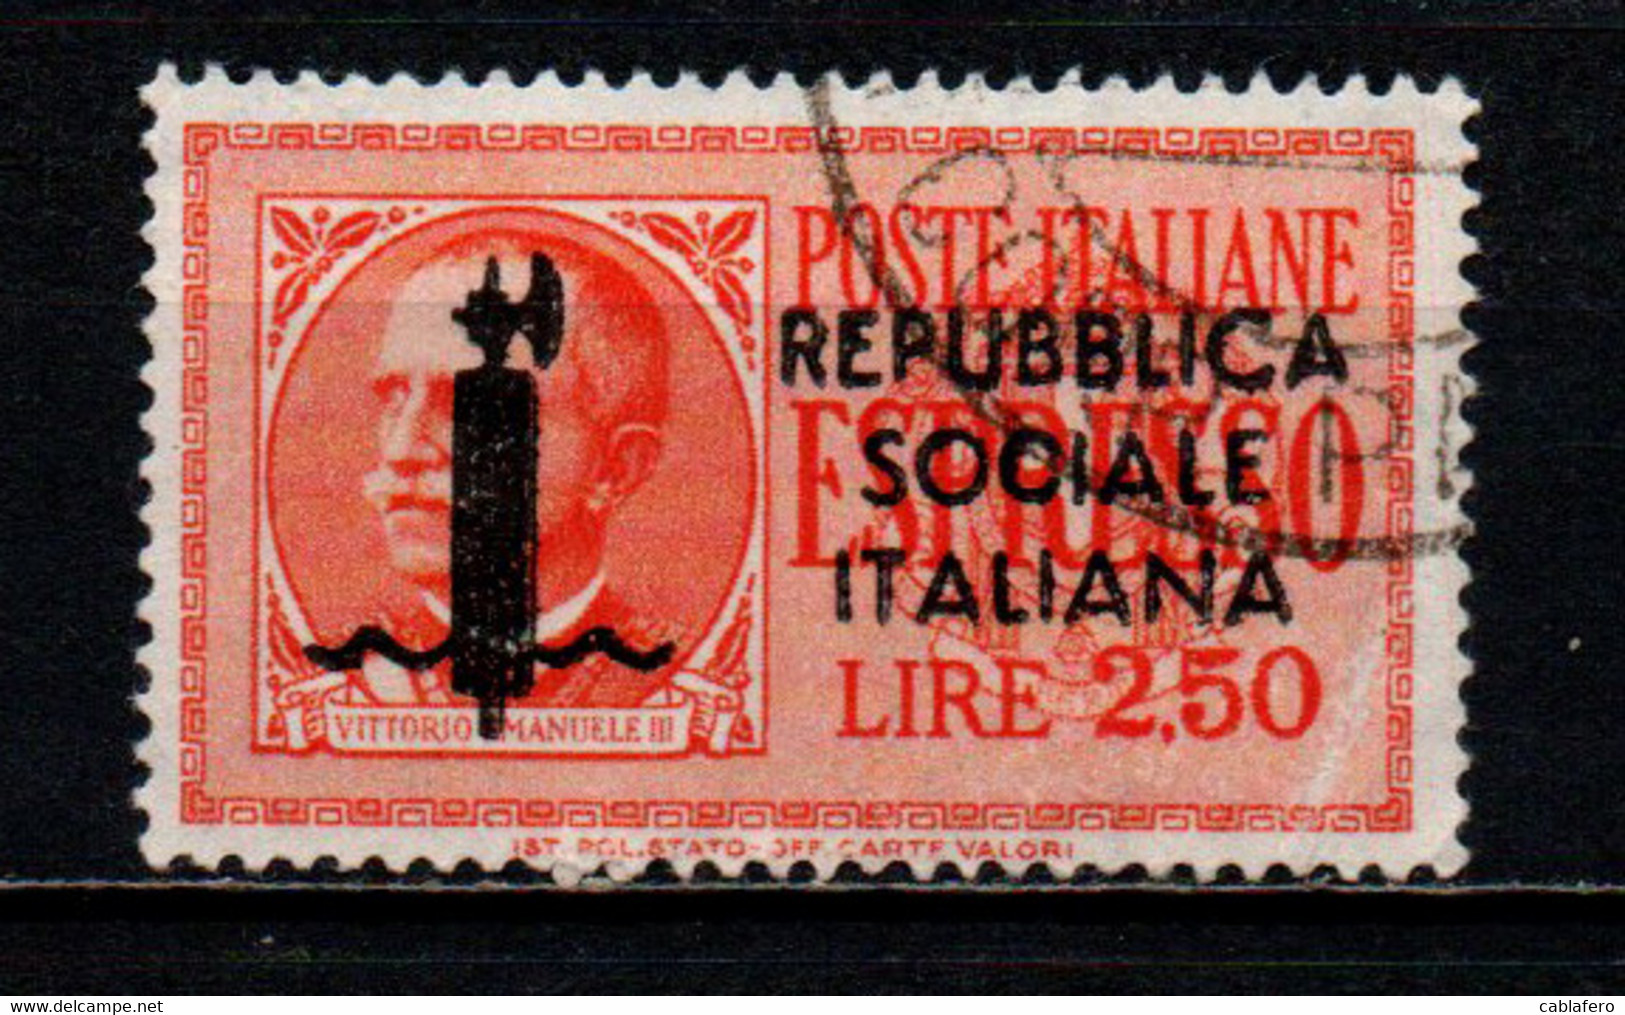 ITALIA RSI - 1944 - EFFIGIE DEL RE VITTORIO EMANULE III - FRANCOBOLLO CON DIFETTO - USATO - Express Mail